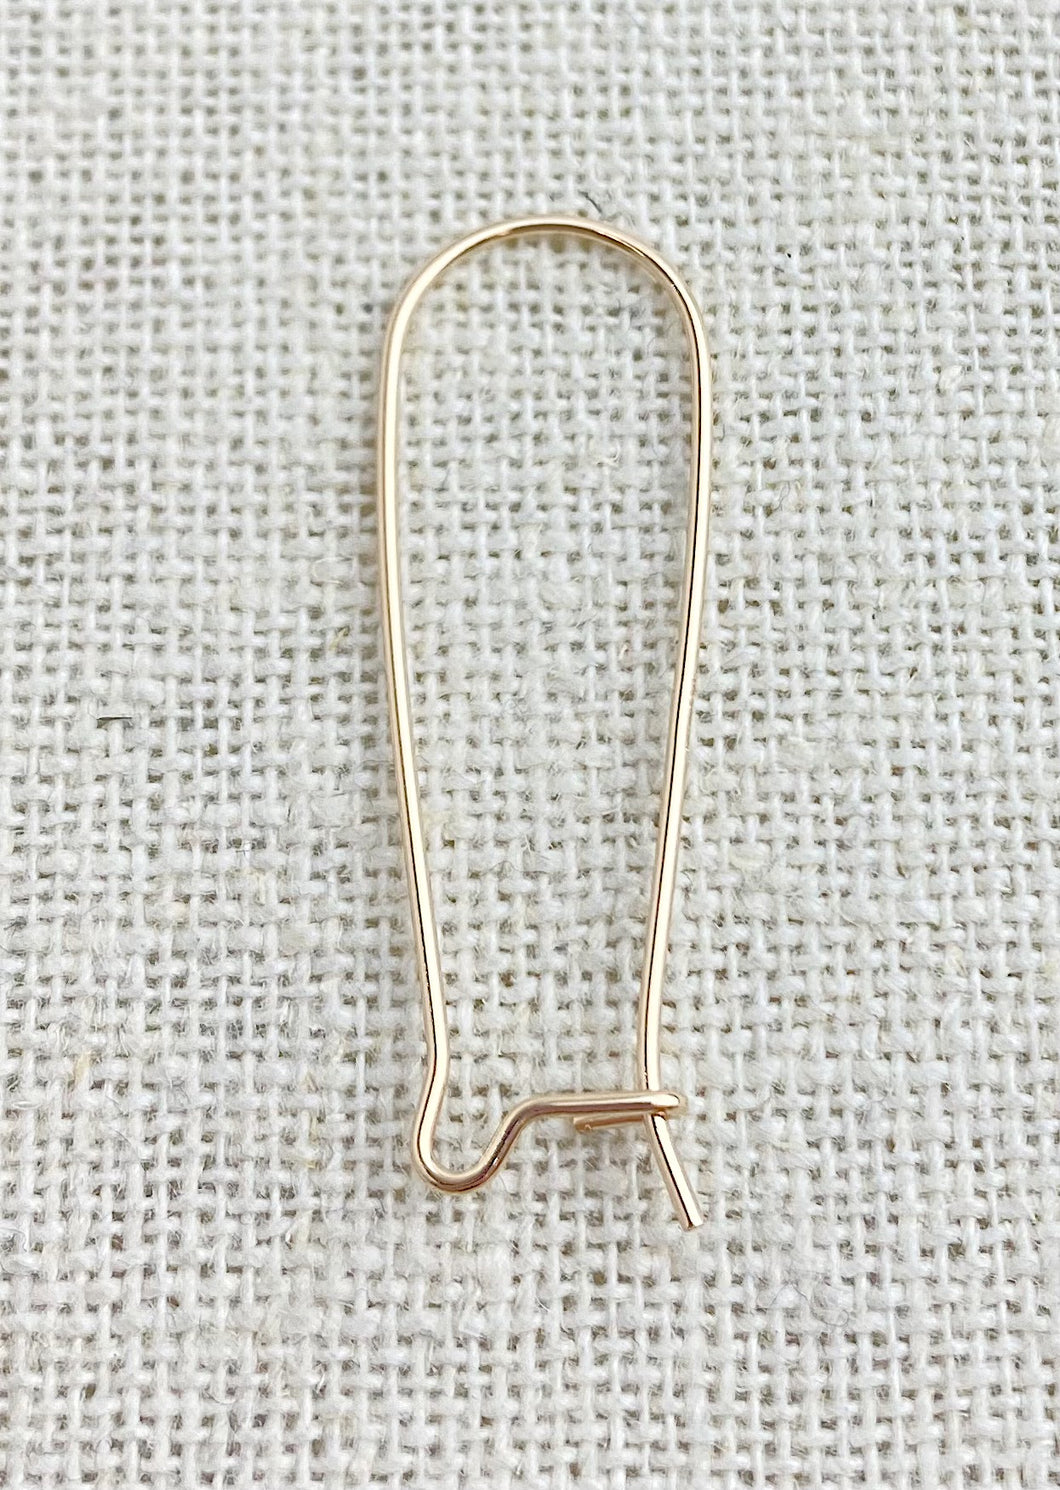 14k GF 35.0mm Kidney Ear Wire (0.76mm)